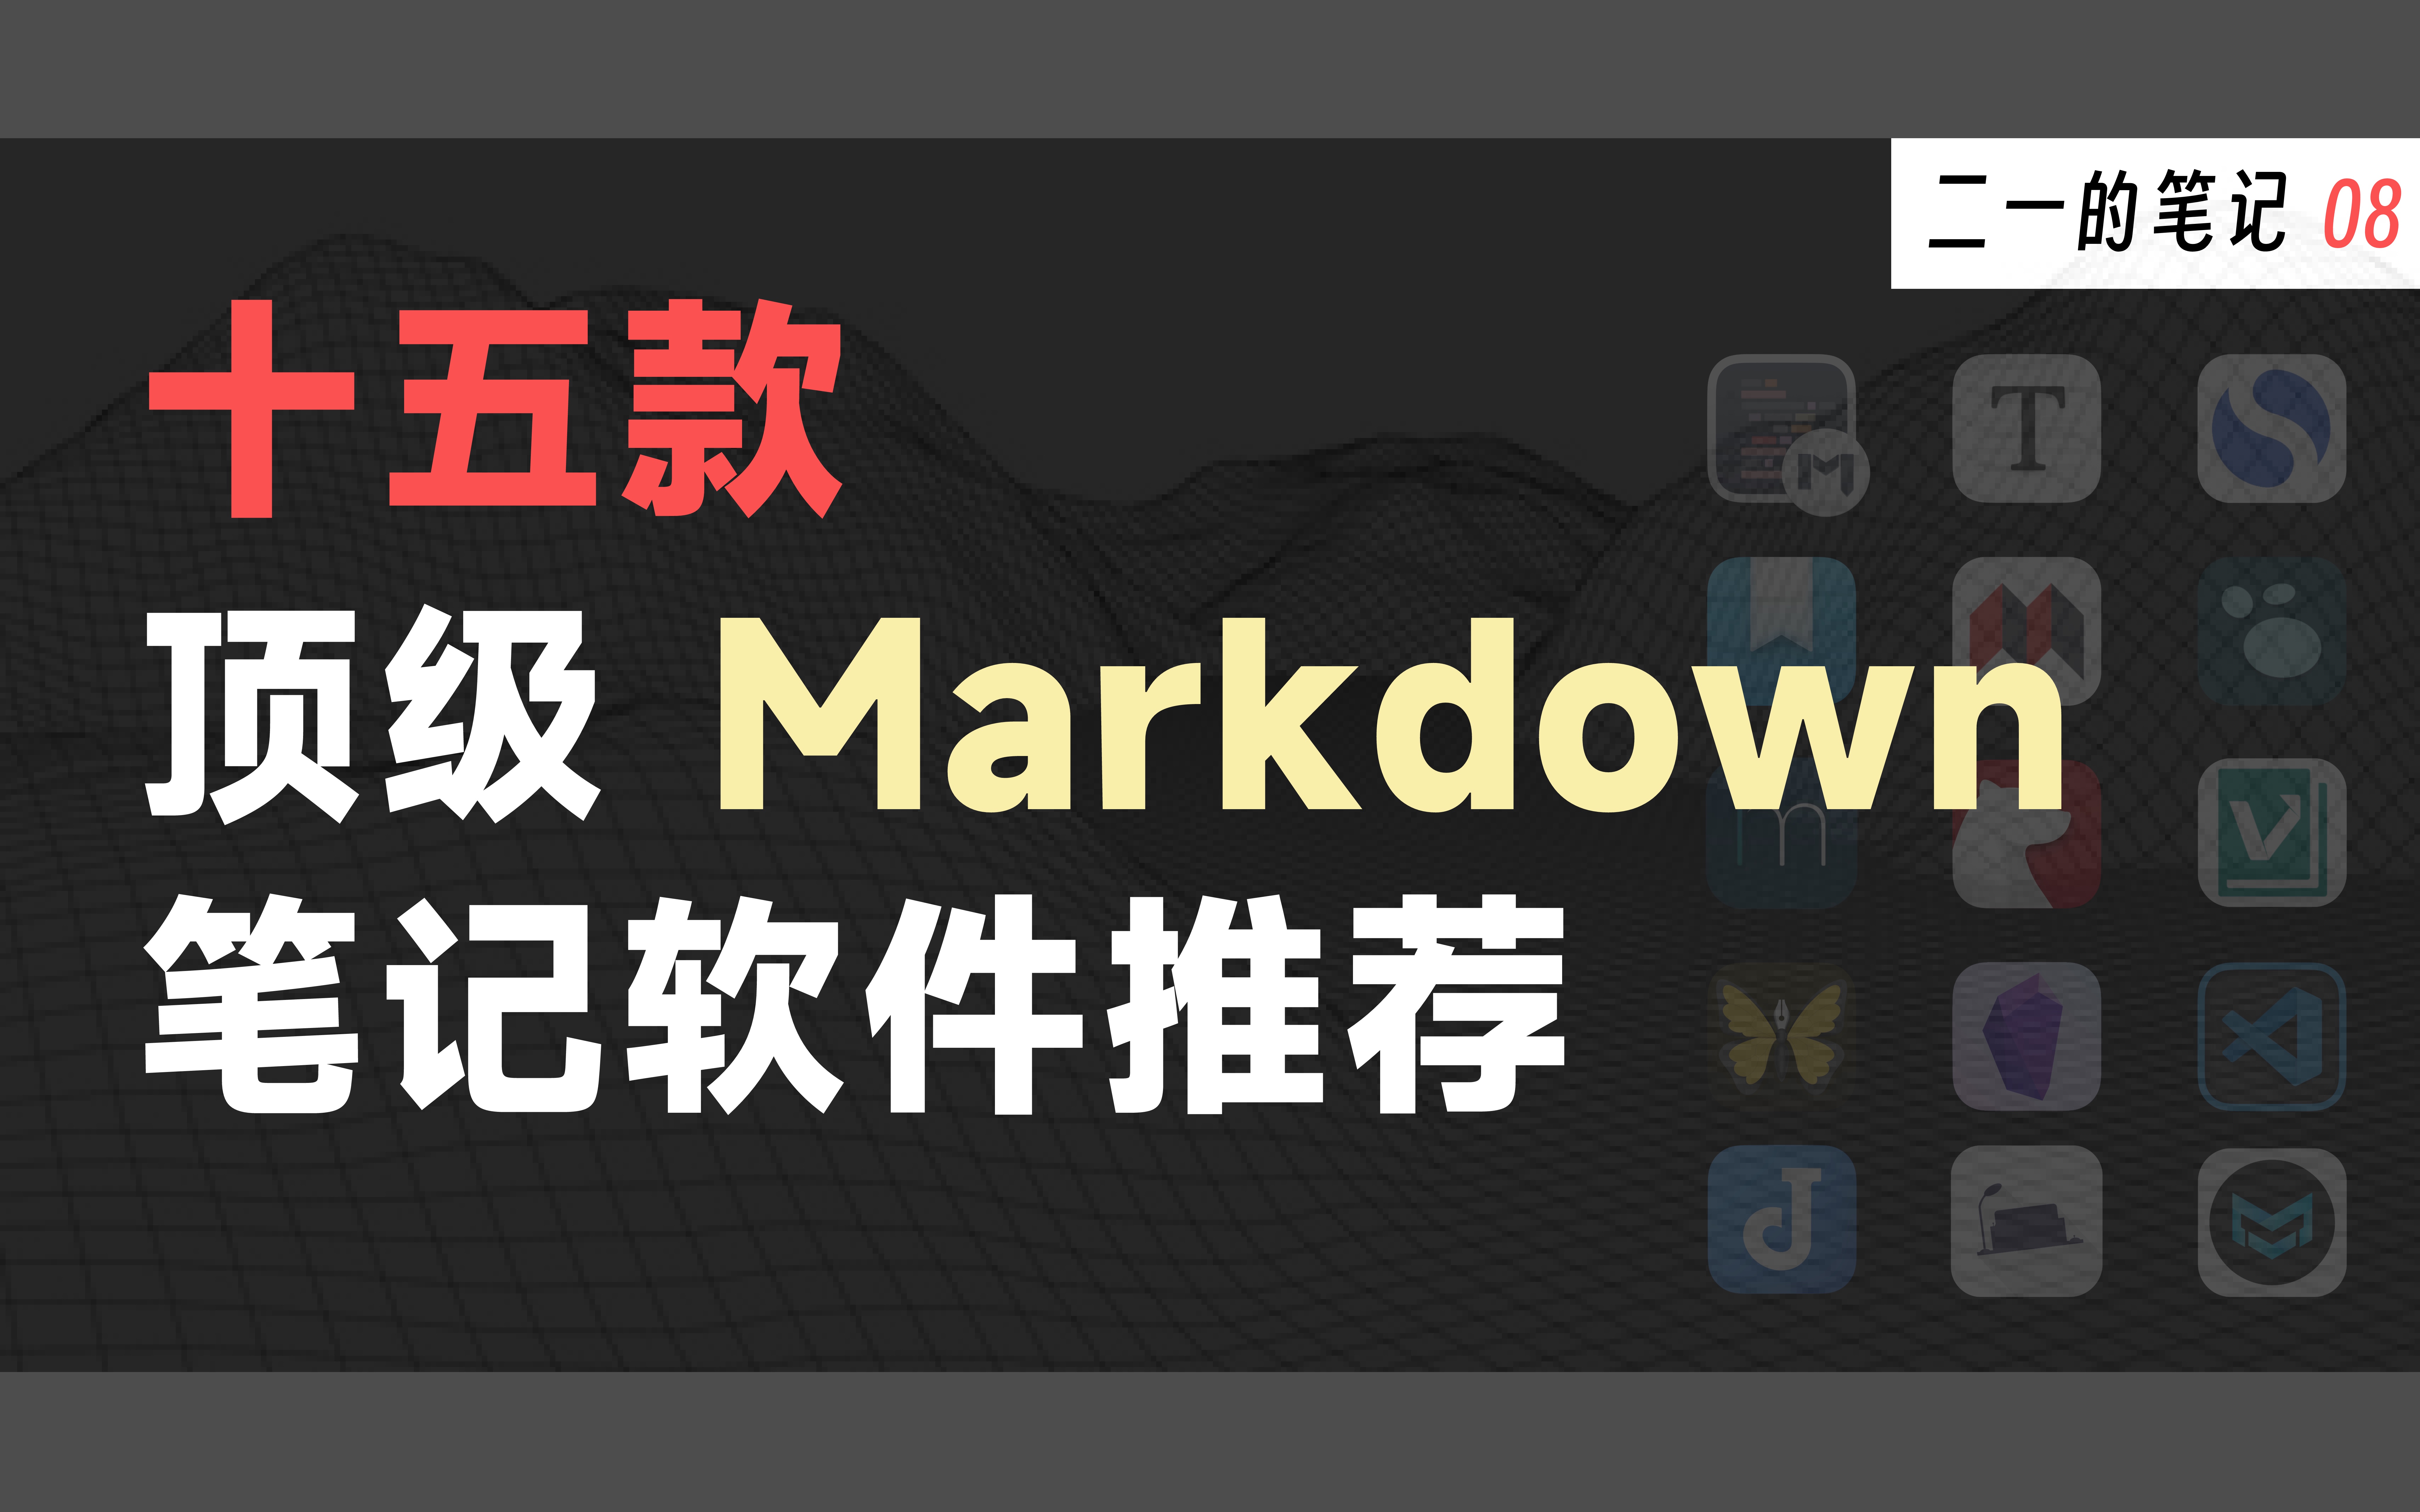 也许是B站最好的 Markdown 科普教程 | 15 款顶级笔记软件测评推荐